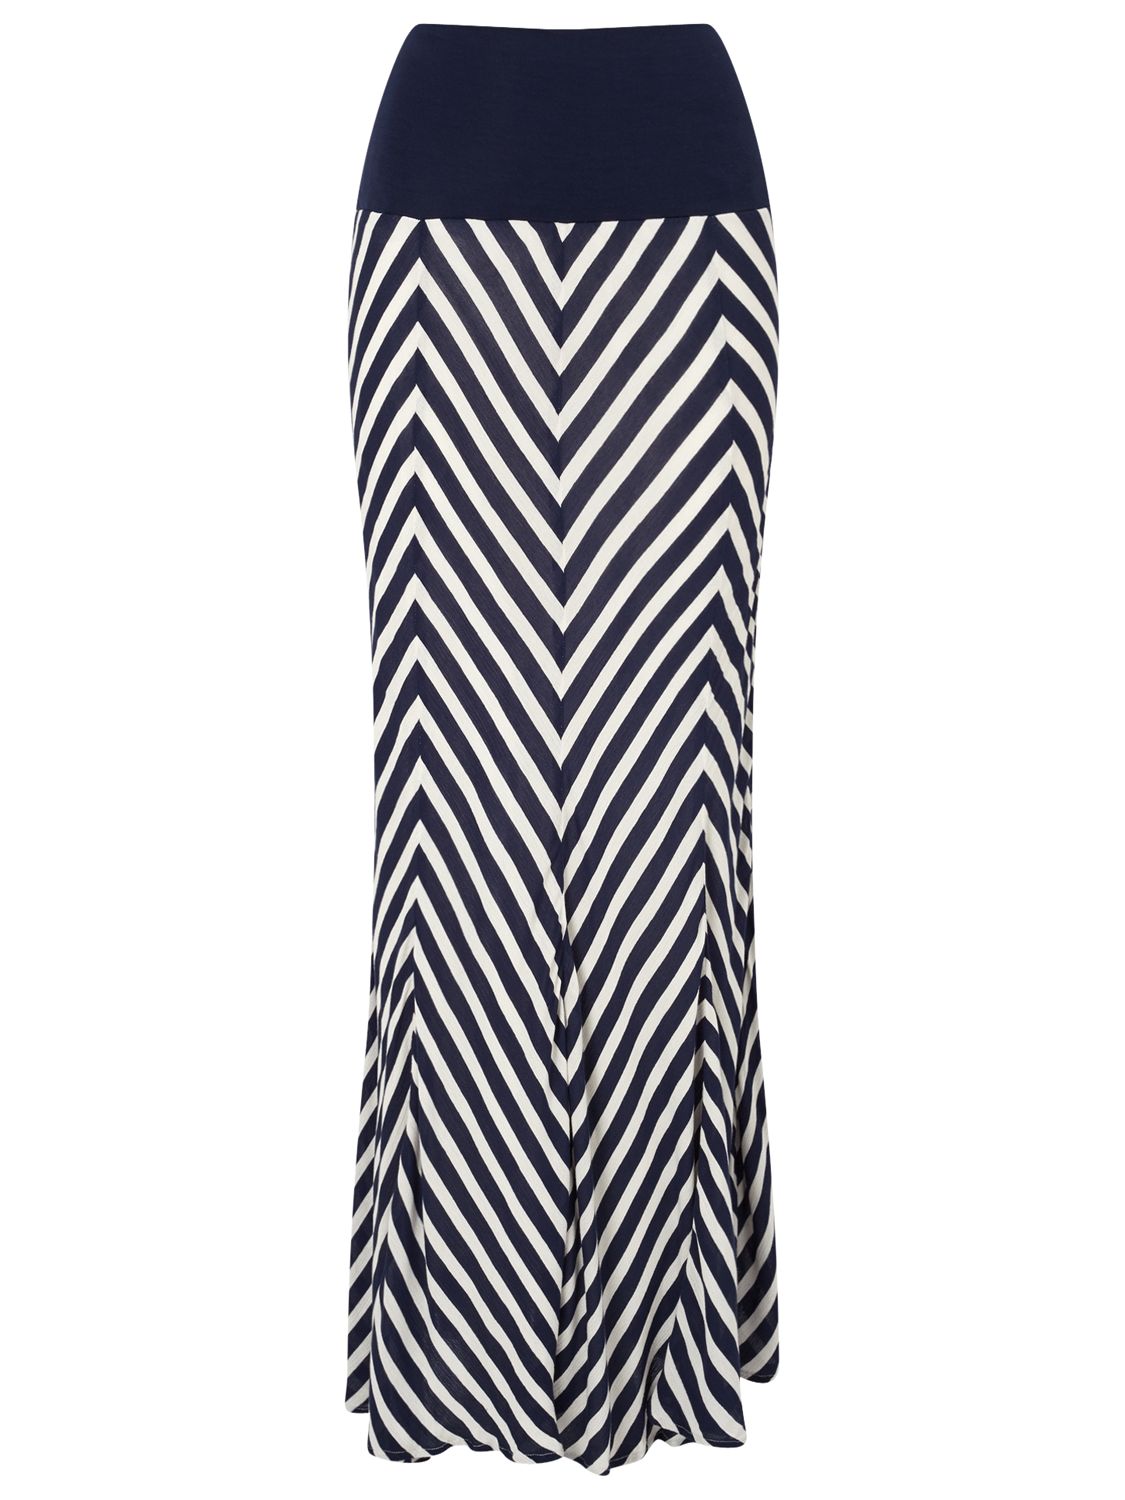 Phase Eight Chevron Stripe Maxi Skirt, Navy/White at John Lewis & Partners